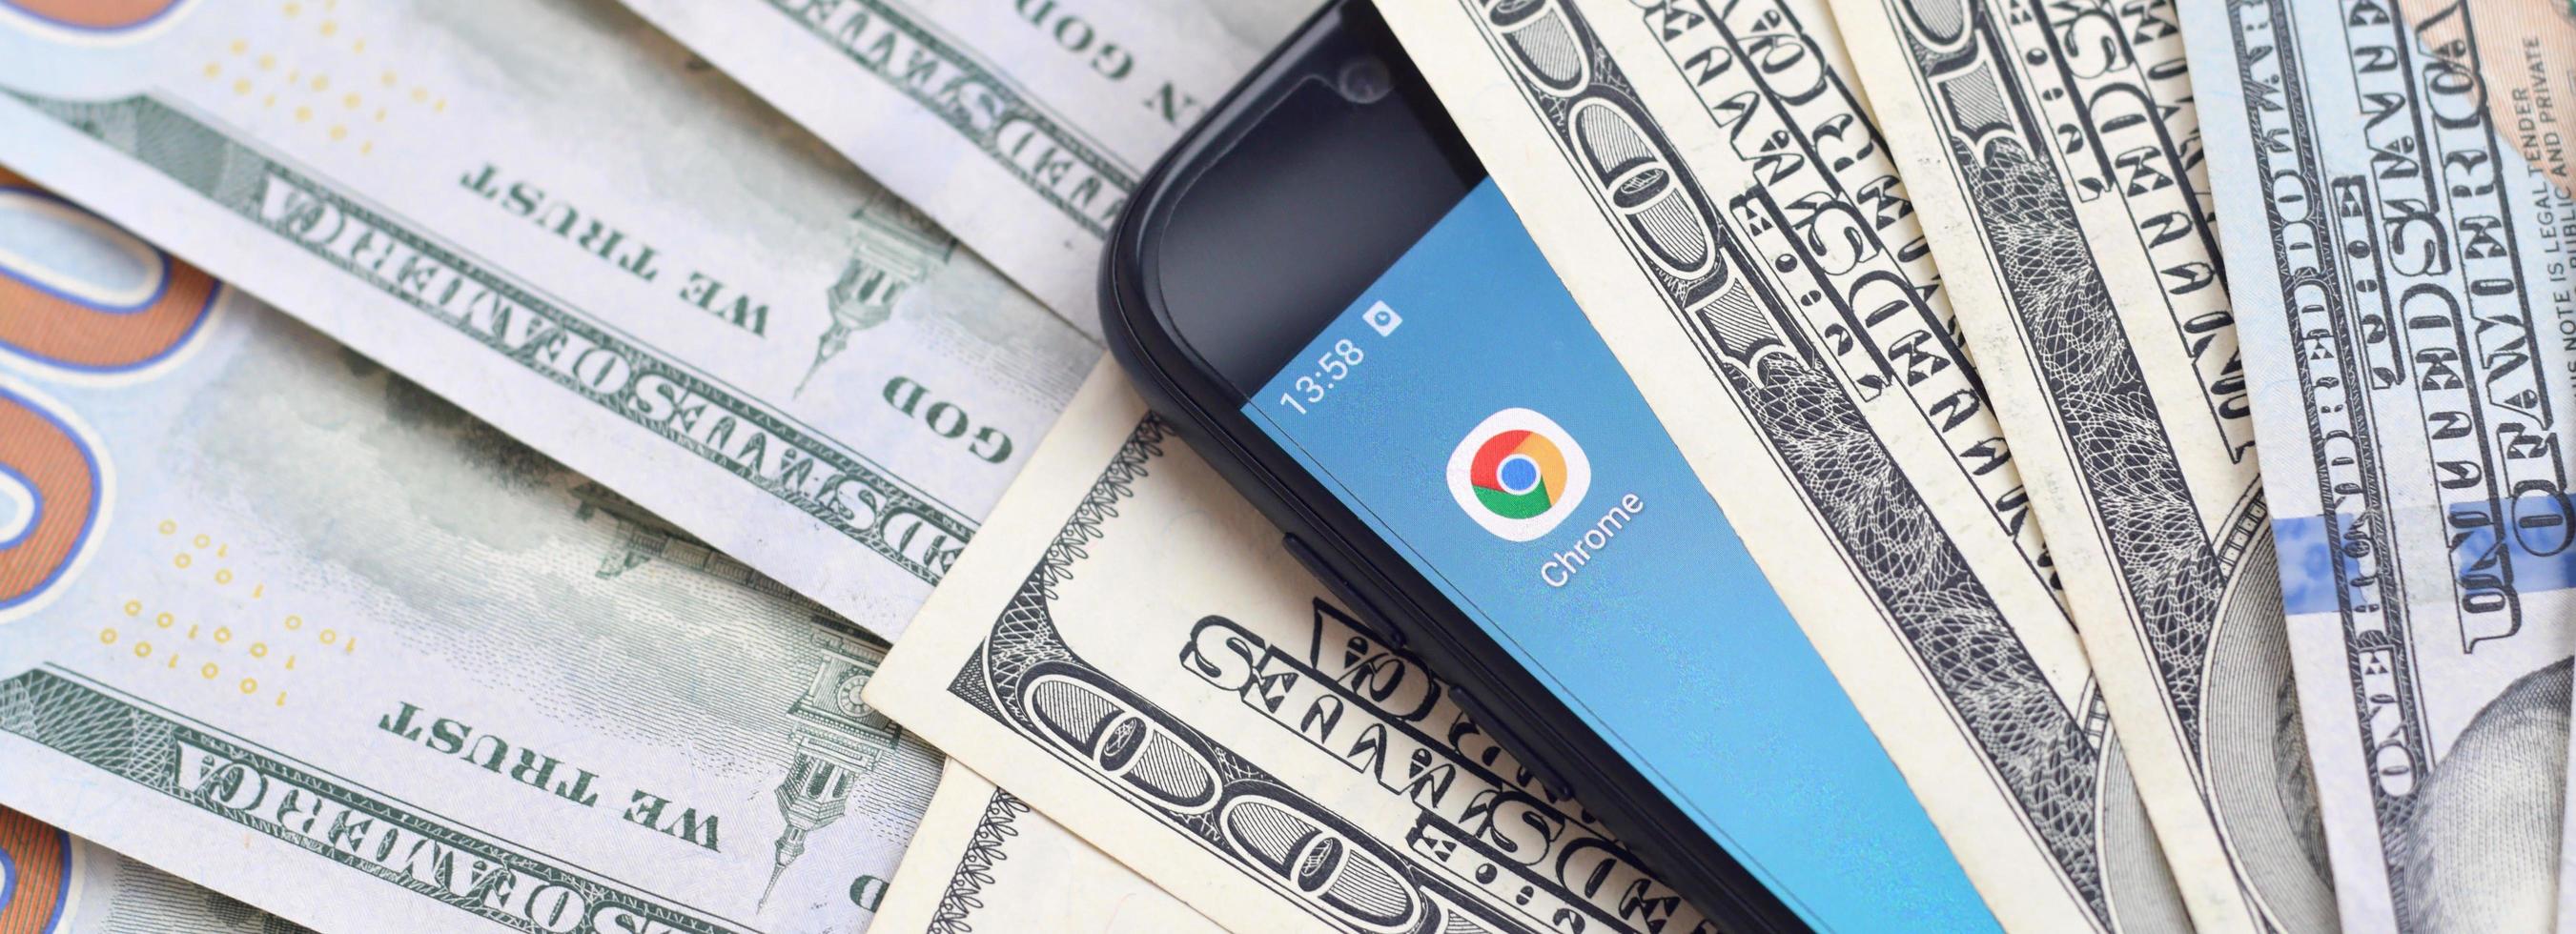 écran de smartphone avec application google chrome et beaucoup de billets de cent dollars. concept d'entreprise et de réseautage social photo